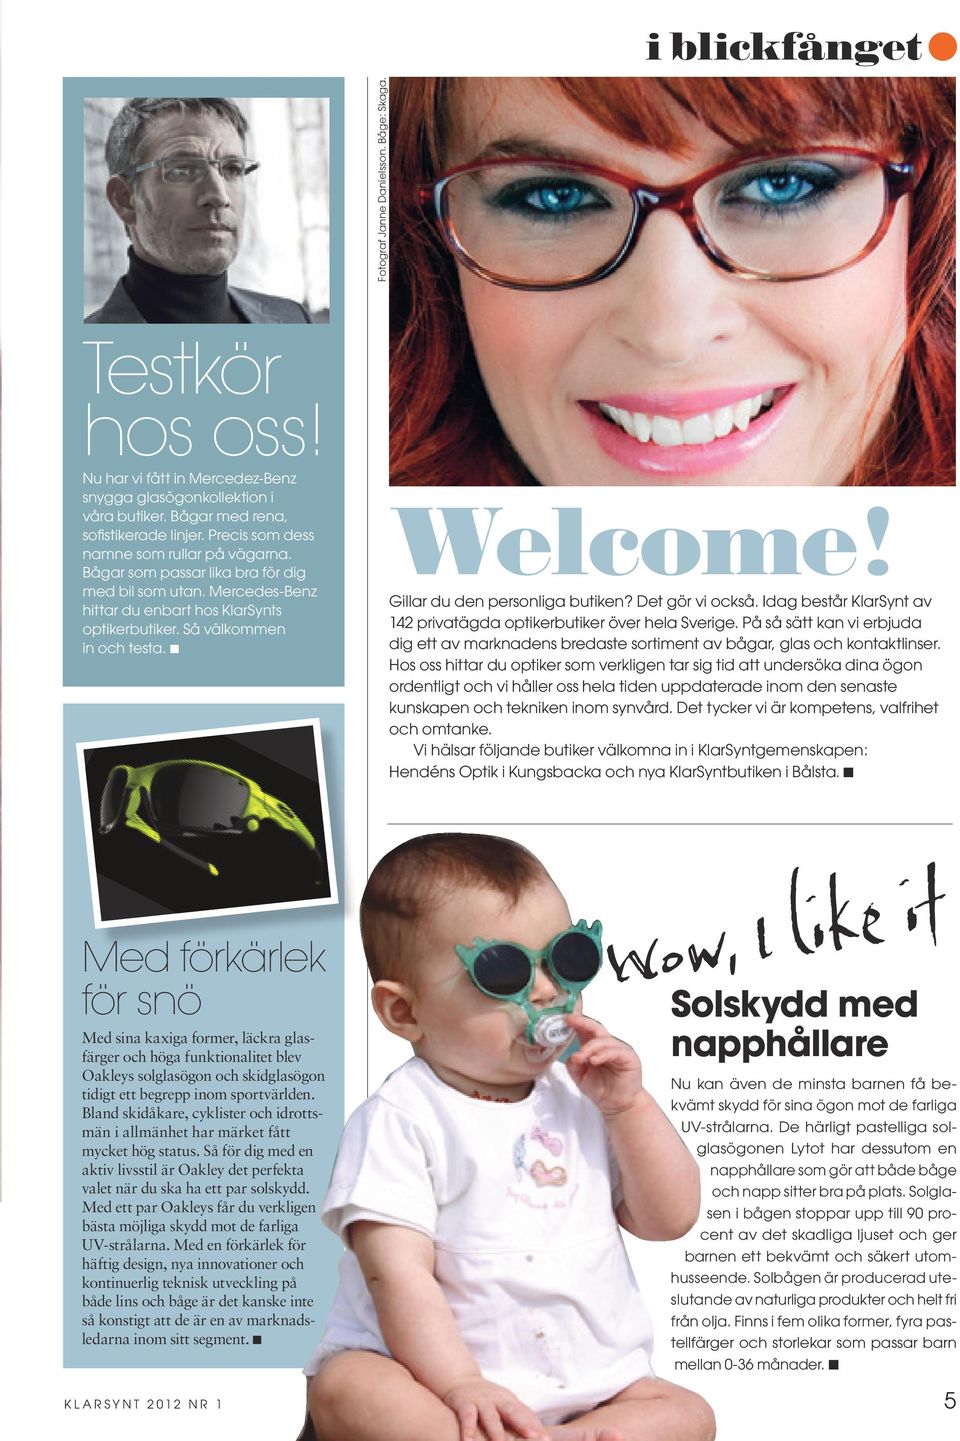 Gillar du den personliga butiken? Det gör vi också. Idag består KlarSynt av 142 privatägda optikerbutiker över hela Sverige.